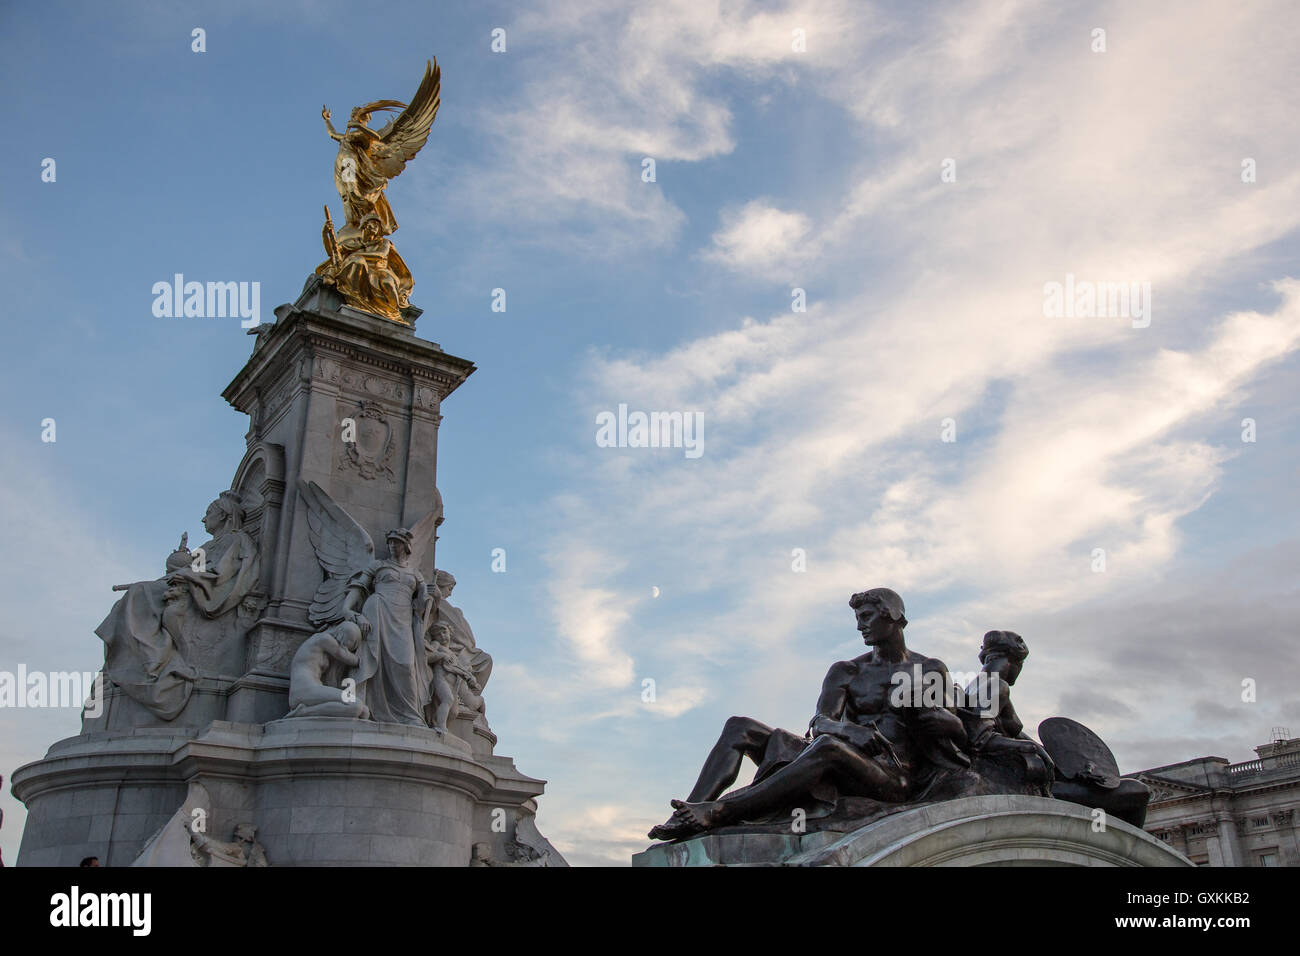 Il memoriale della Victoria, dedicato alla regina Victoria, si trova direttamente di fronte a Buckingham Palace, con la regina Vittoria di fronte al Foto Stock